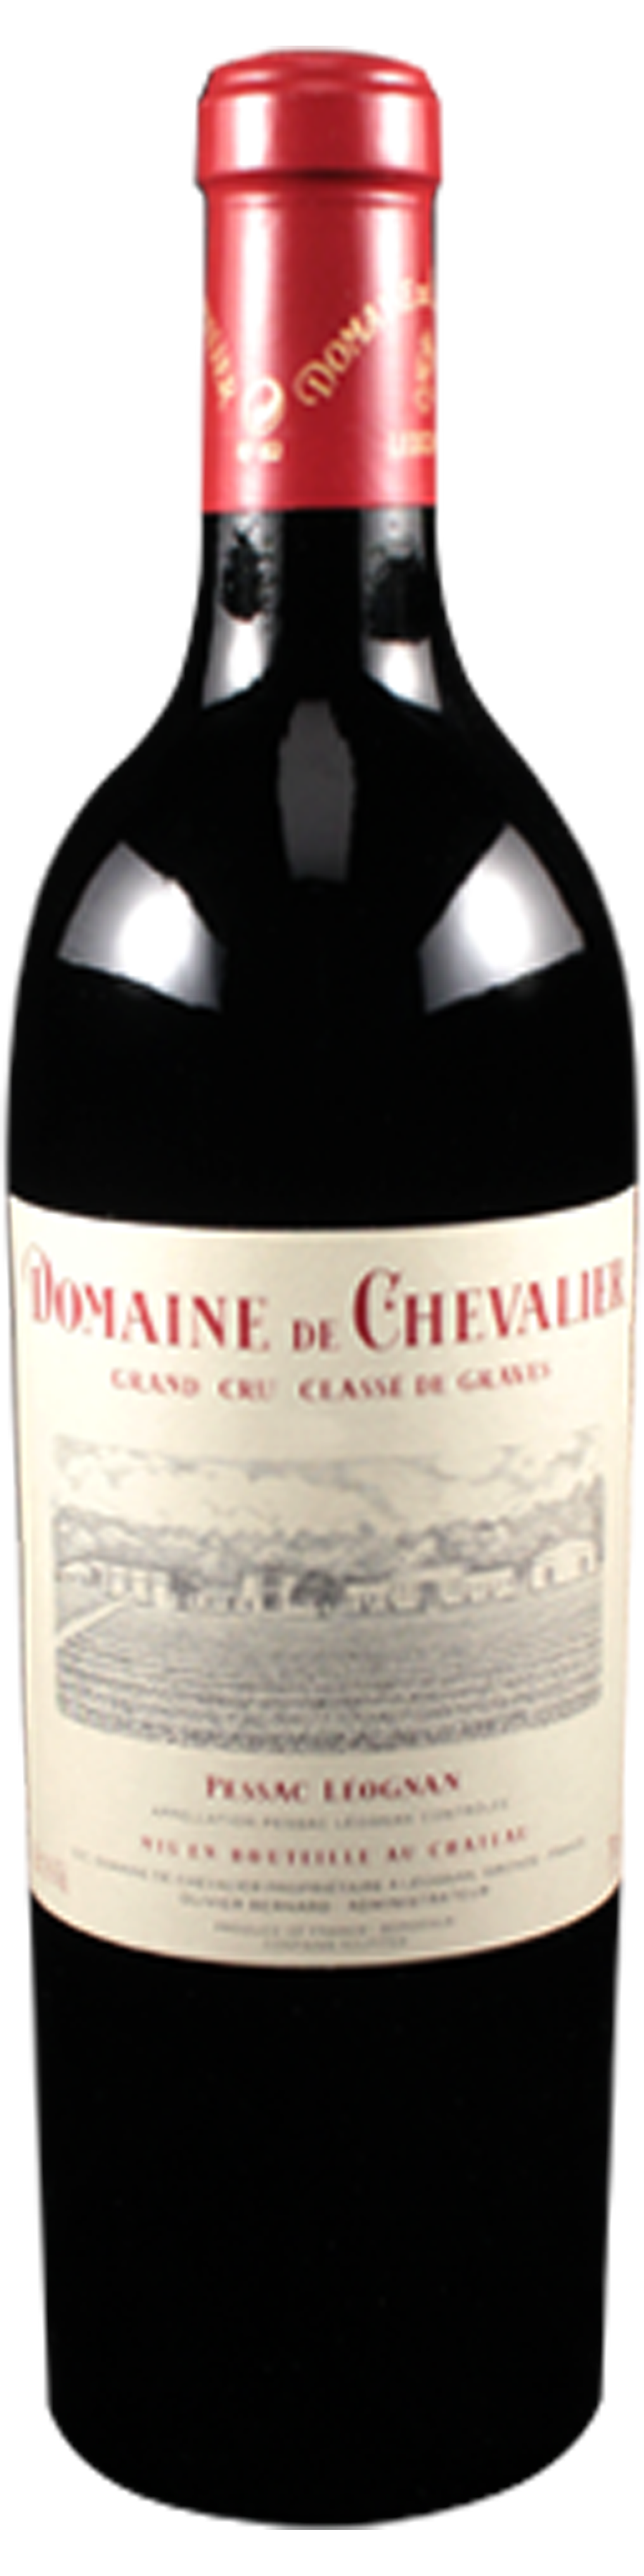 Bottle shot of 2010 Domaine de Chevalier Rouge, Cru Classé Graves